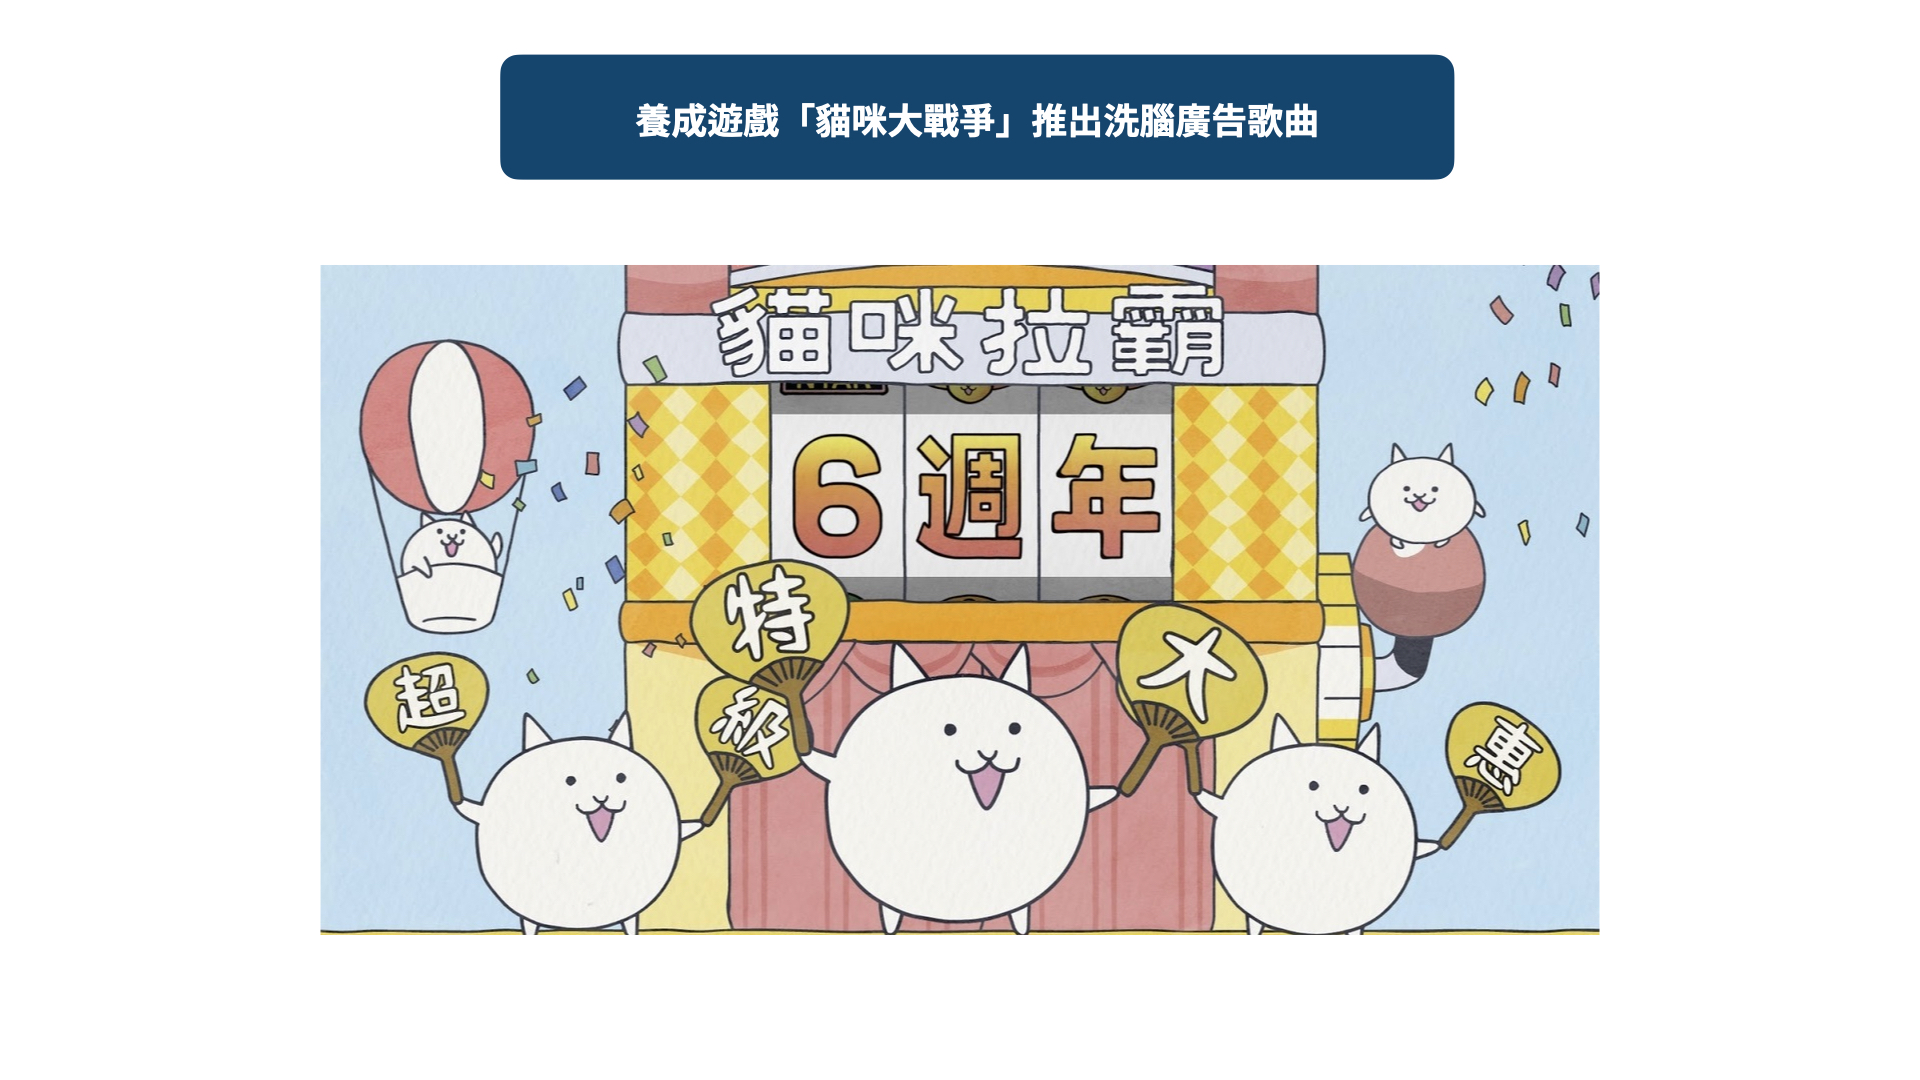 日本養成遊戲「貓咪大戰爭」於六週年活動時，在Youtube及電視廣告中推出廣告，洗腦的歌詞及旋律，意外引起網路討論熱潮。